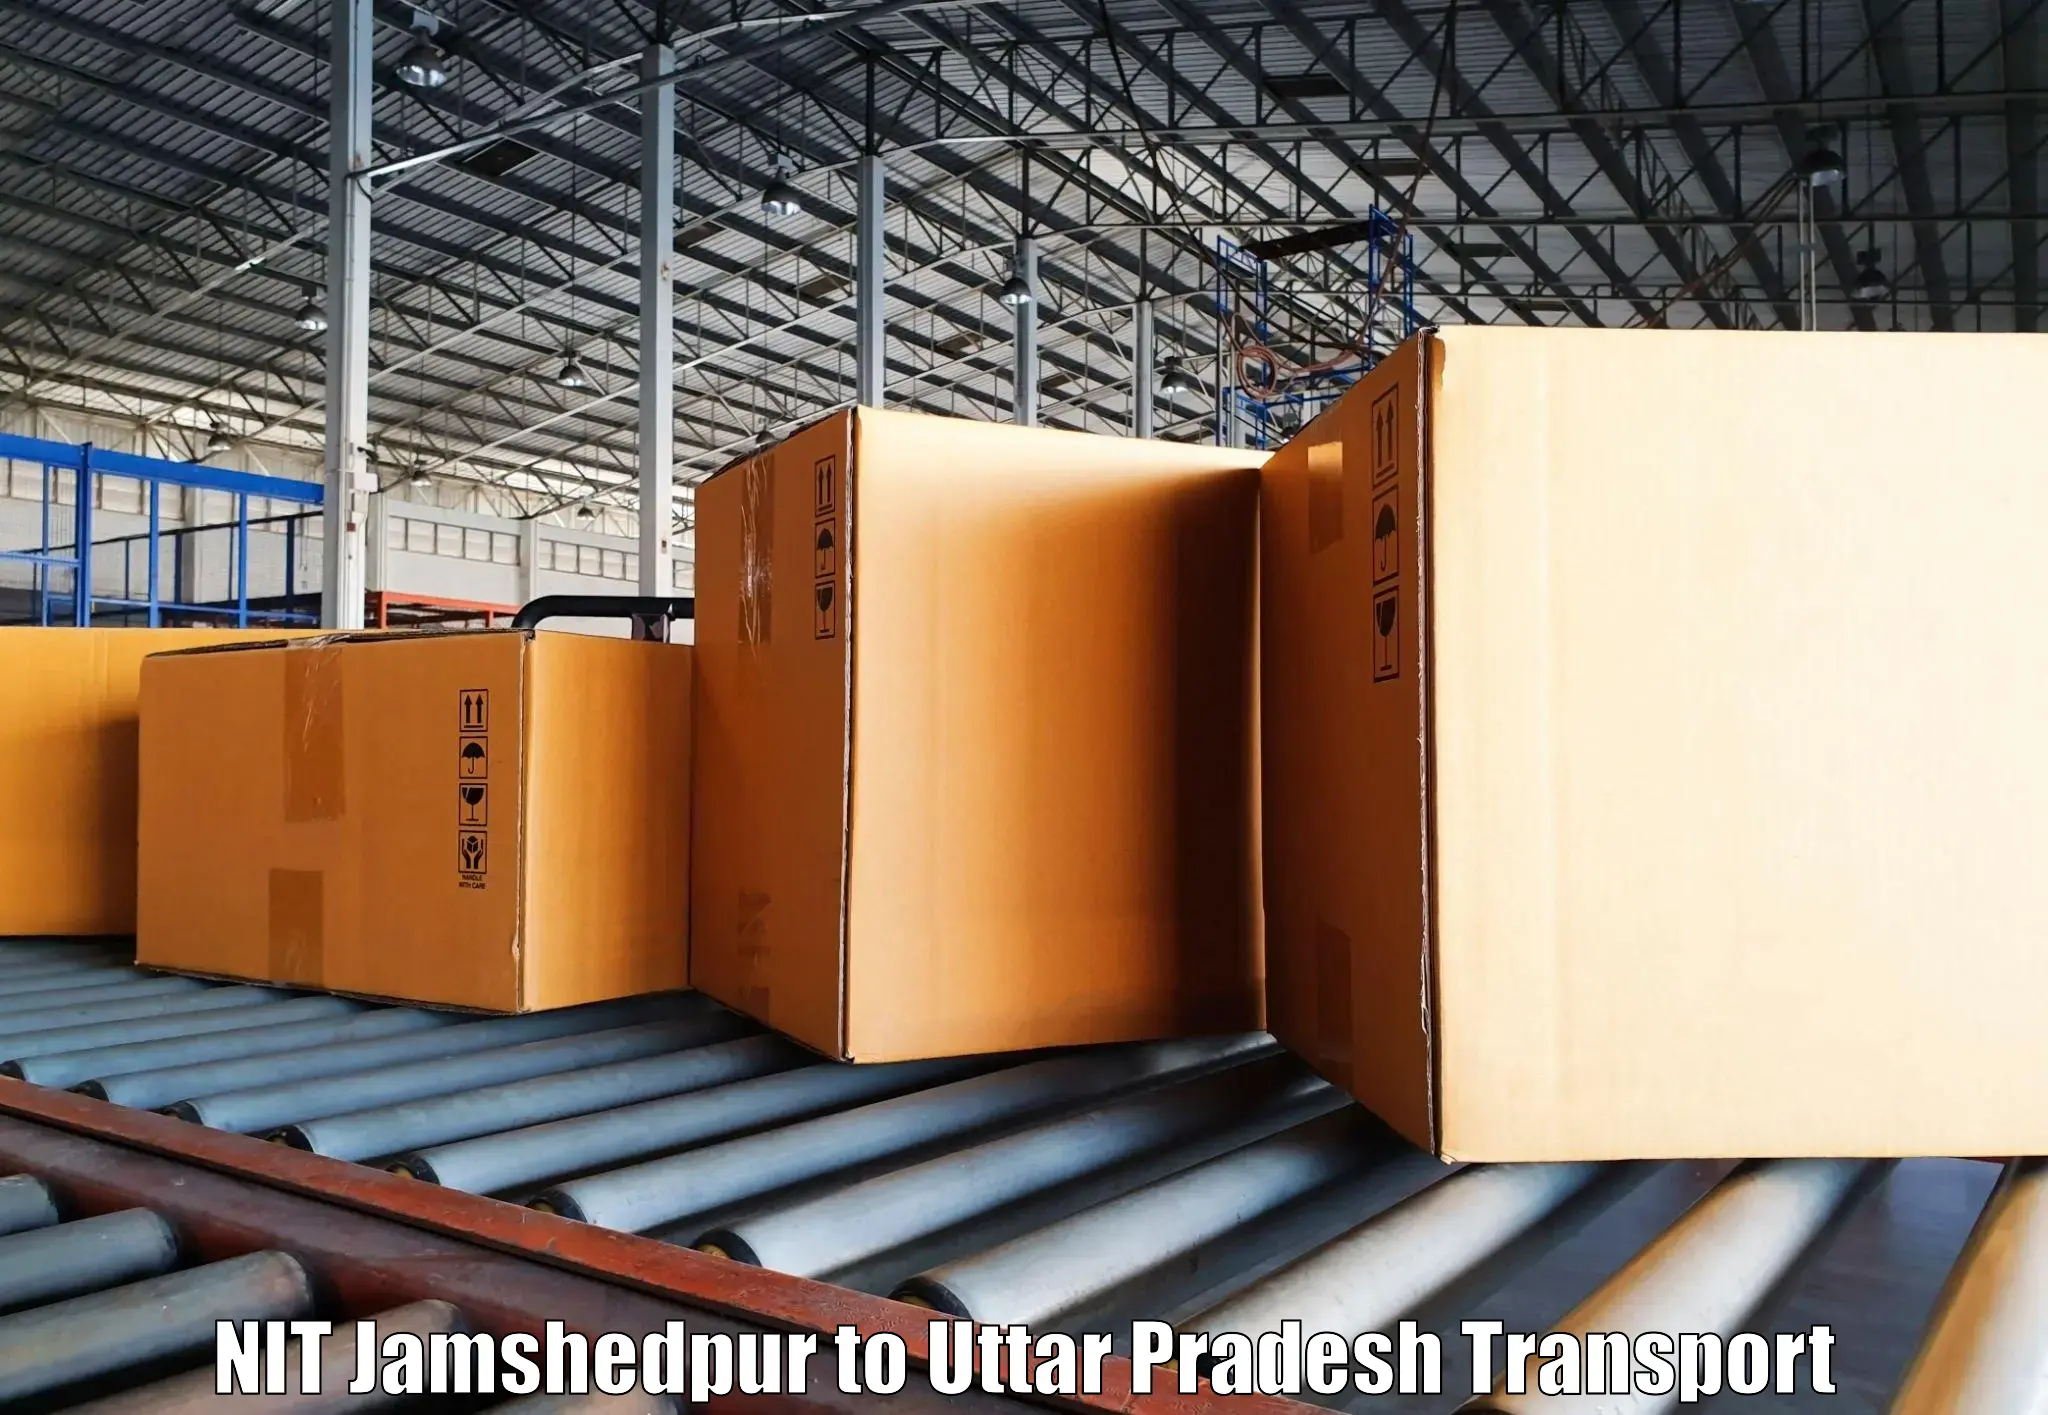 Commercial transport service NIT Jamshedpur to Kanth